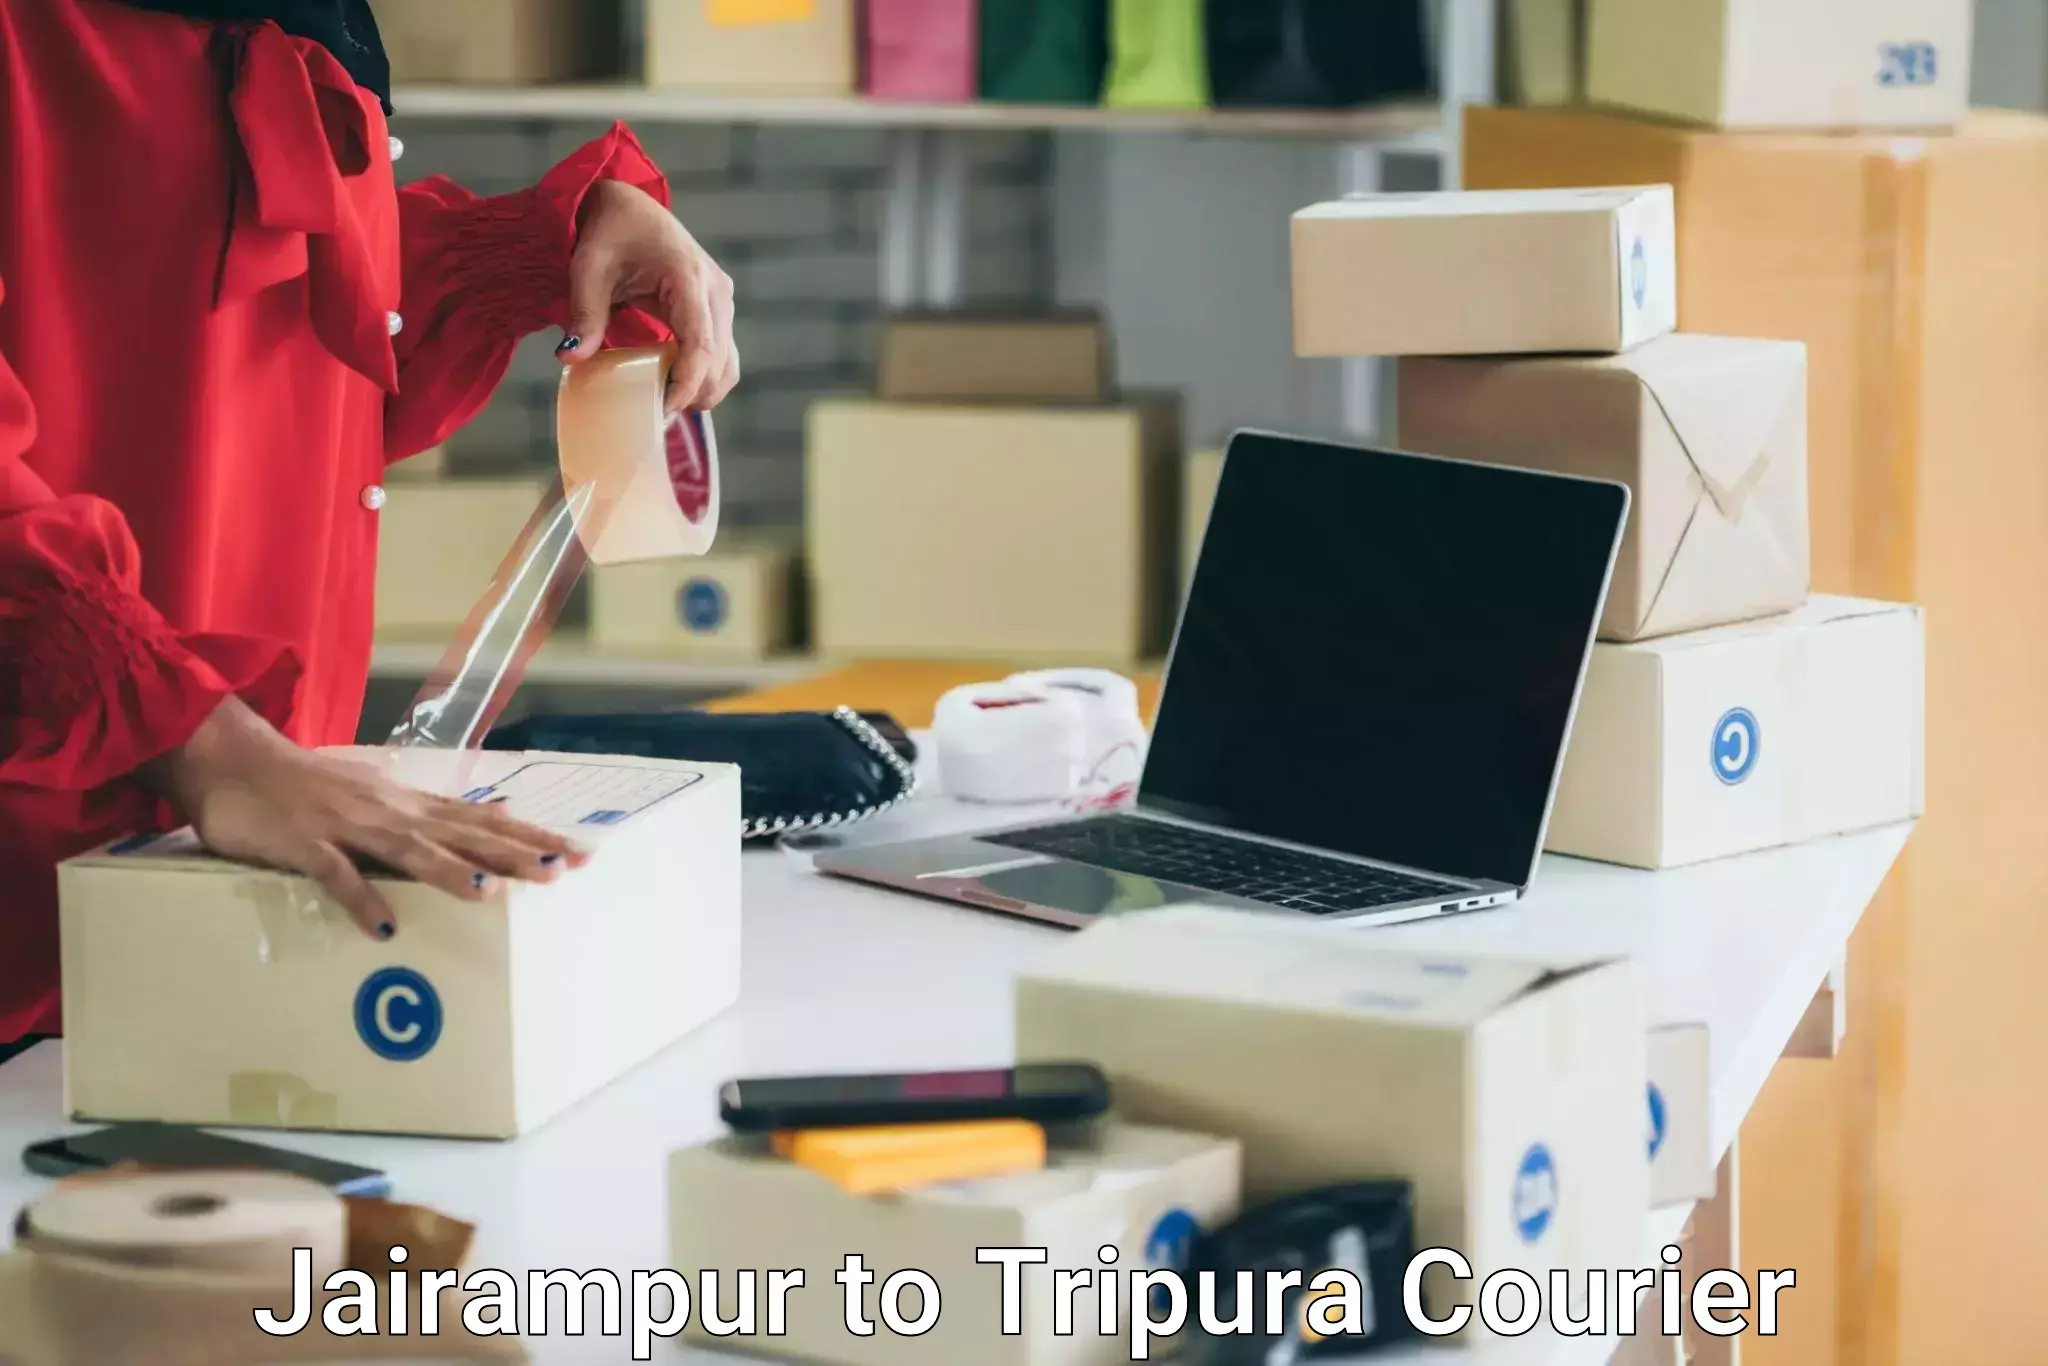 Trusted furniture transport in Jairampur to Amarpur